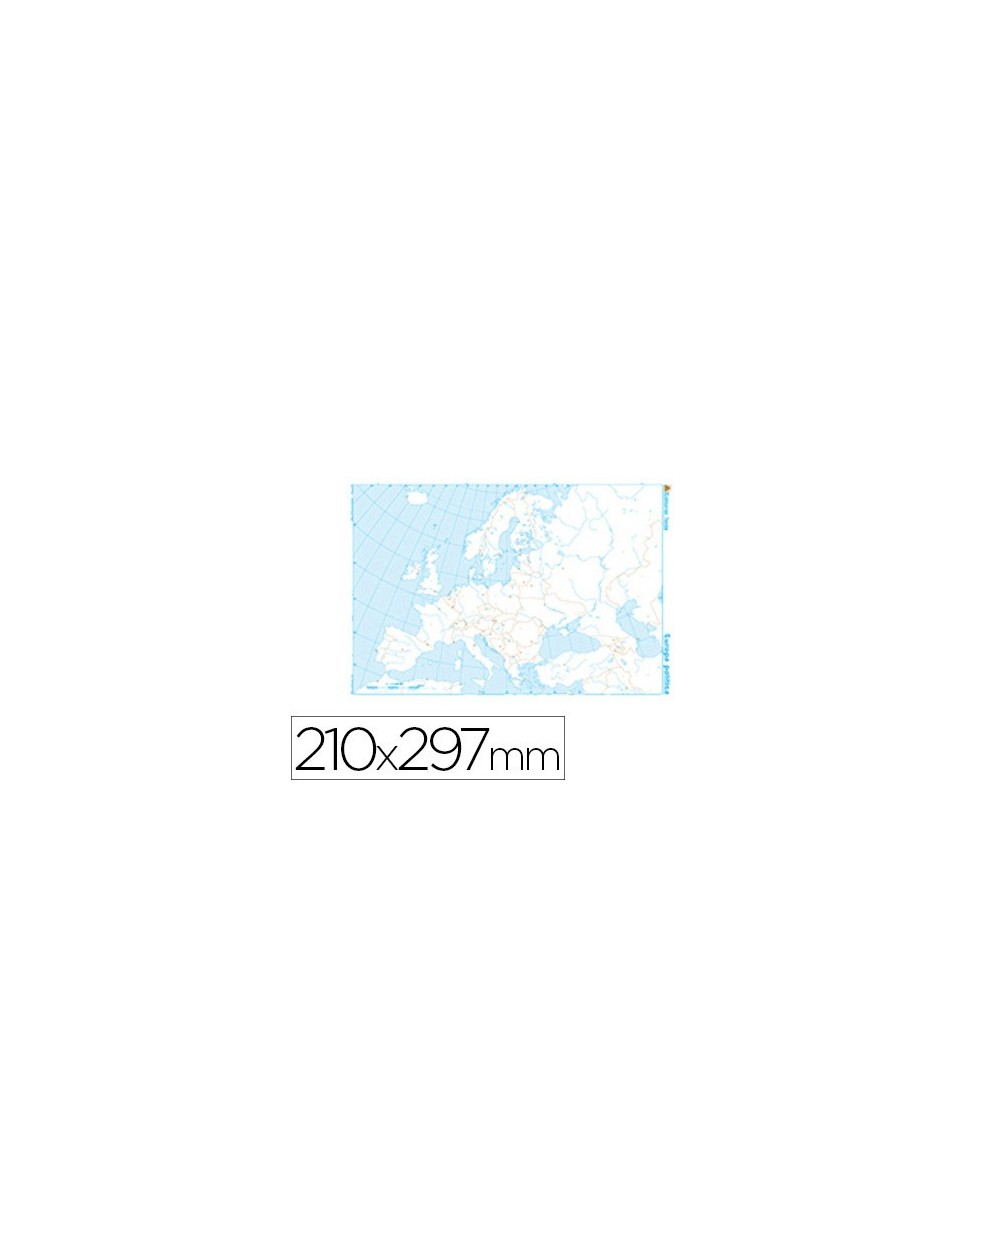 Mapa mudo b n din a4 europa politico